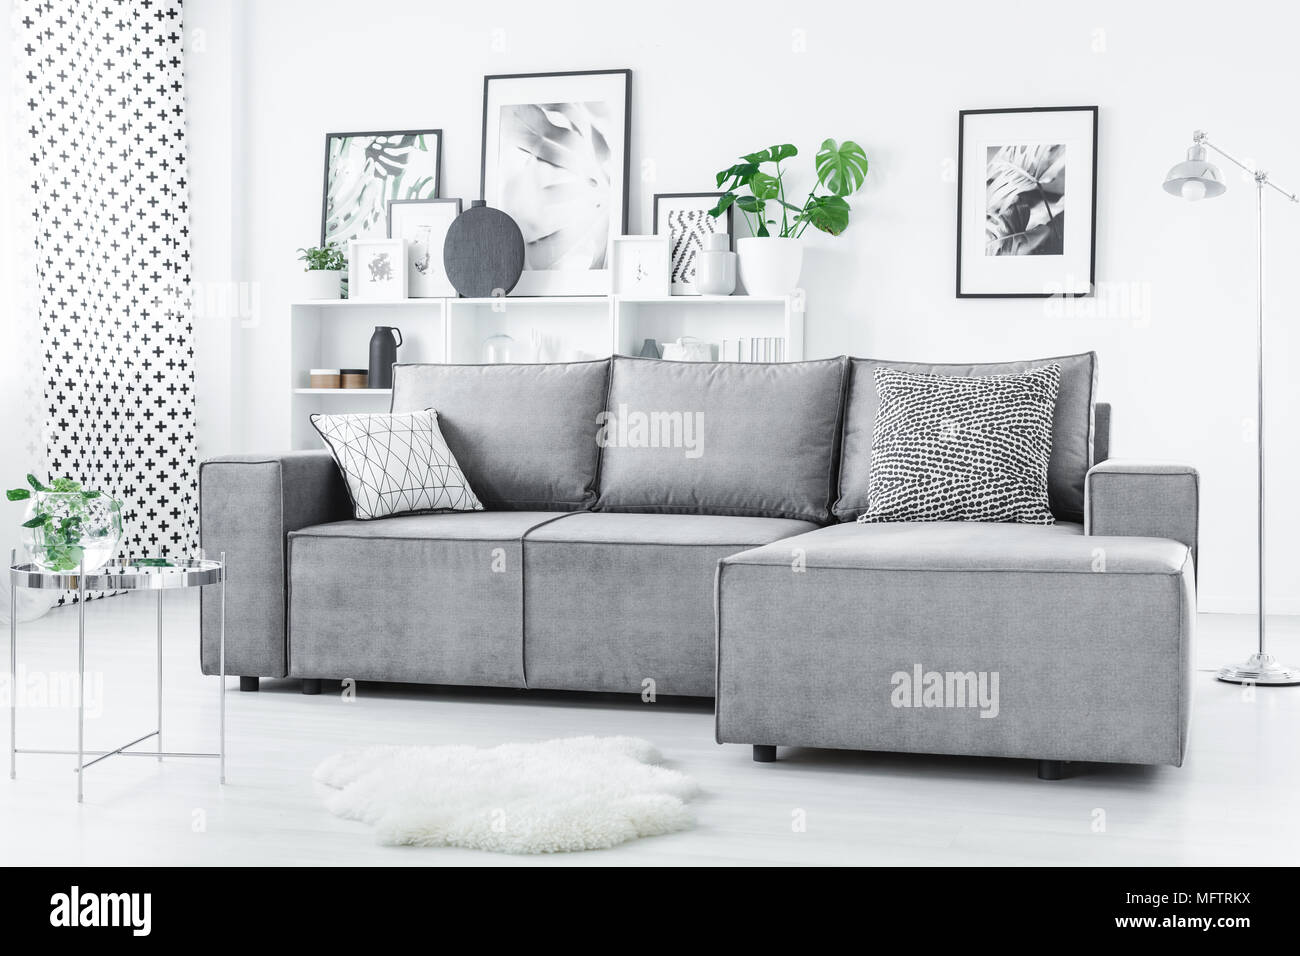 De simples affiches et des plantes fraîches placés dans white studio intérieur avec canapé d'angle et de tapis moelleux Banque D'Images